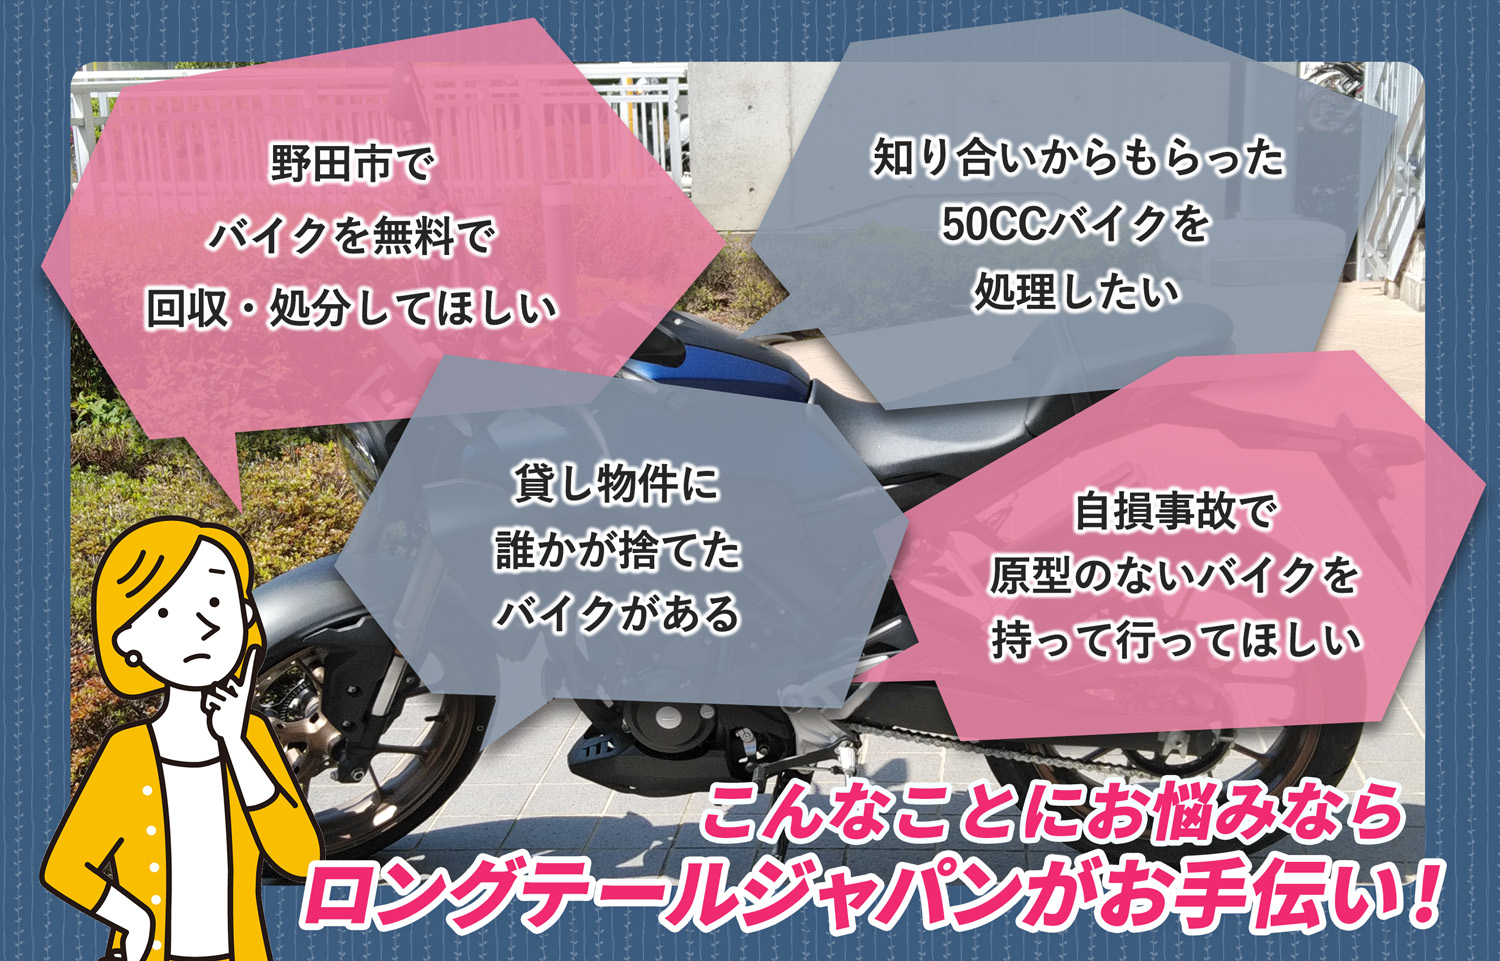 野田市でこんなバイクの処分にお困りでしたらバイク無料回収処分隊がお手伝いいたします。